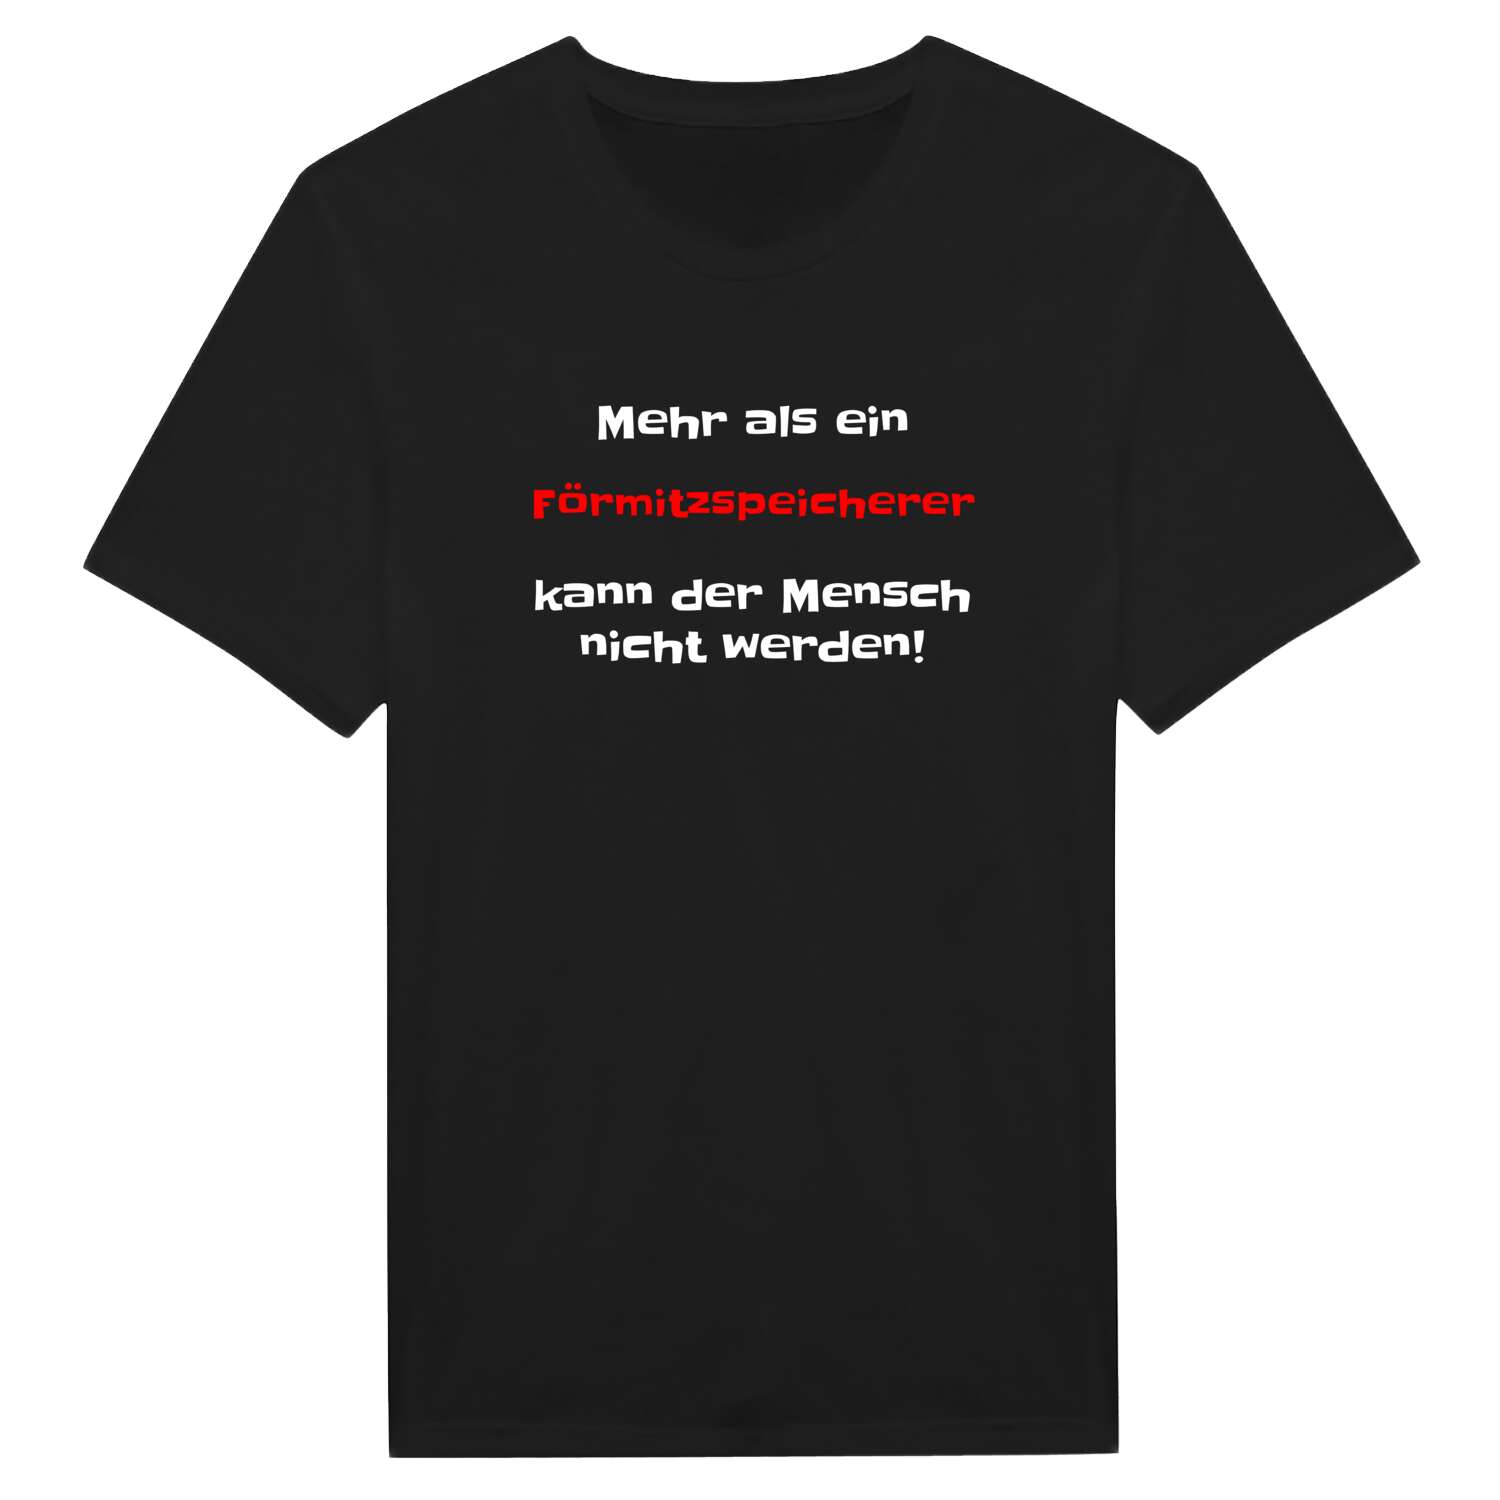 Förmitzspeicher T-Shirt »Mehr als ein«